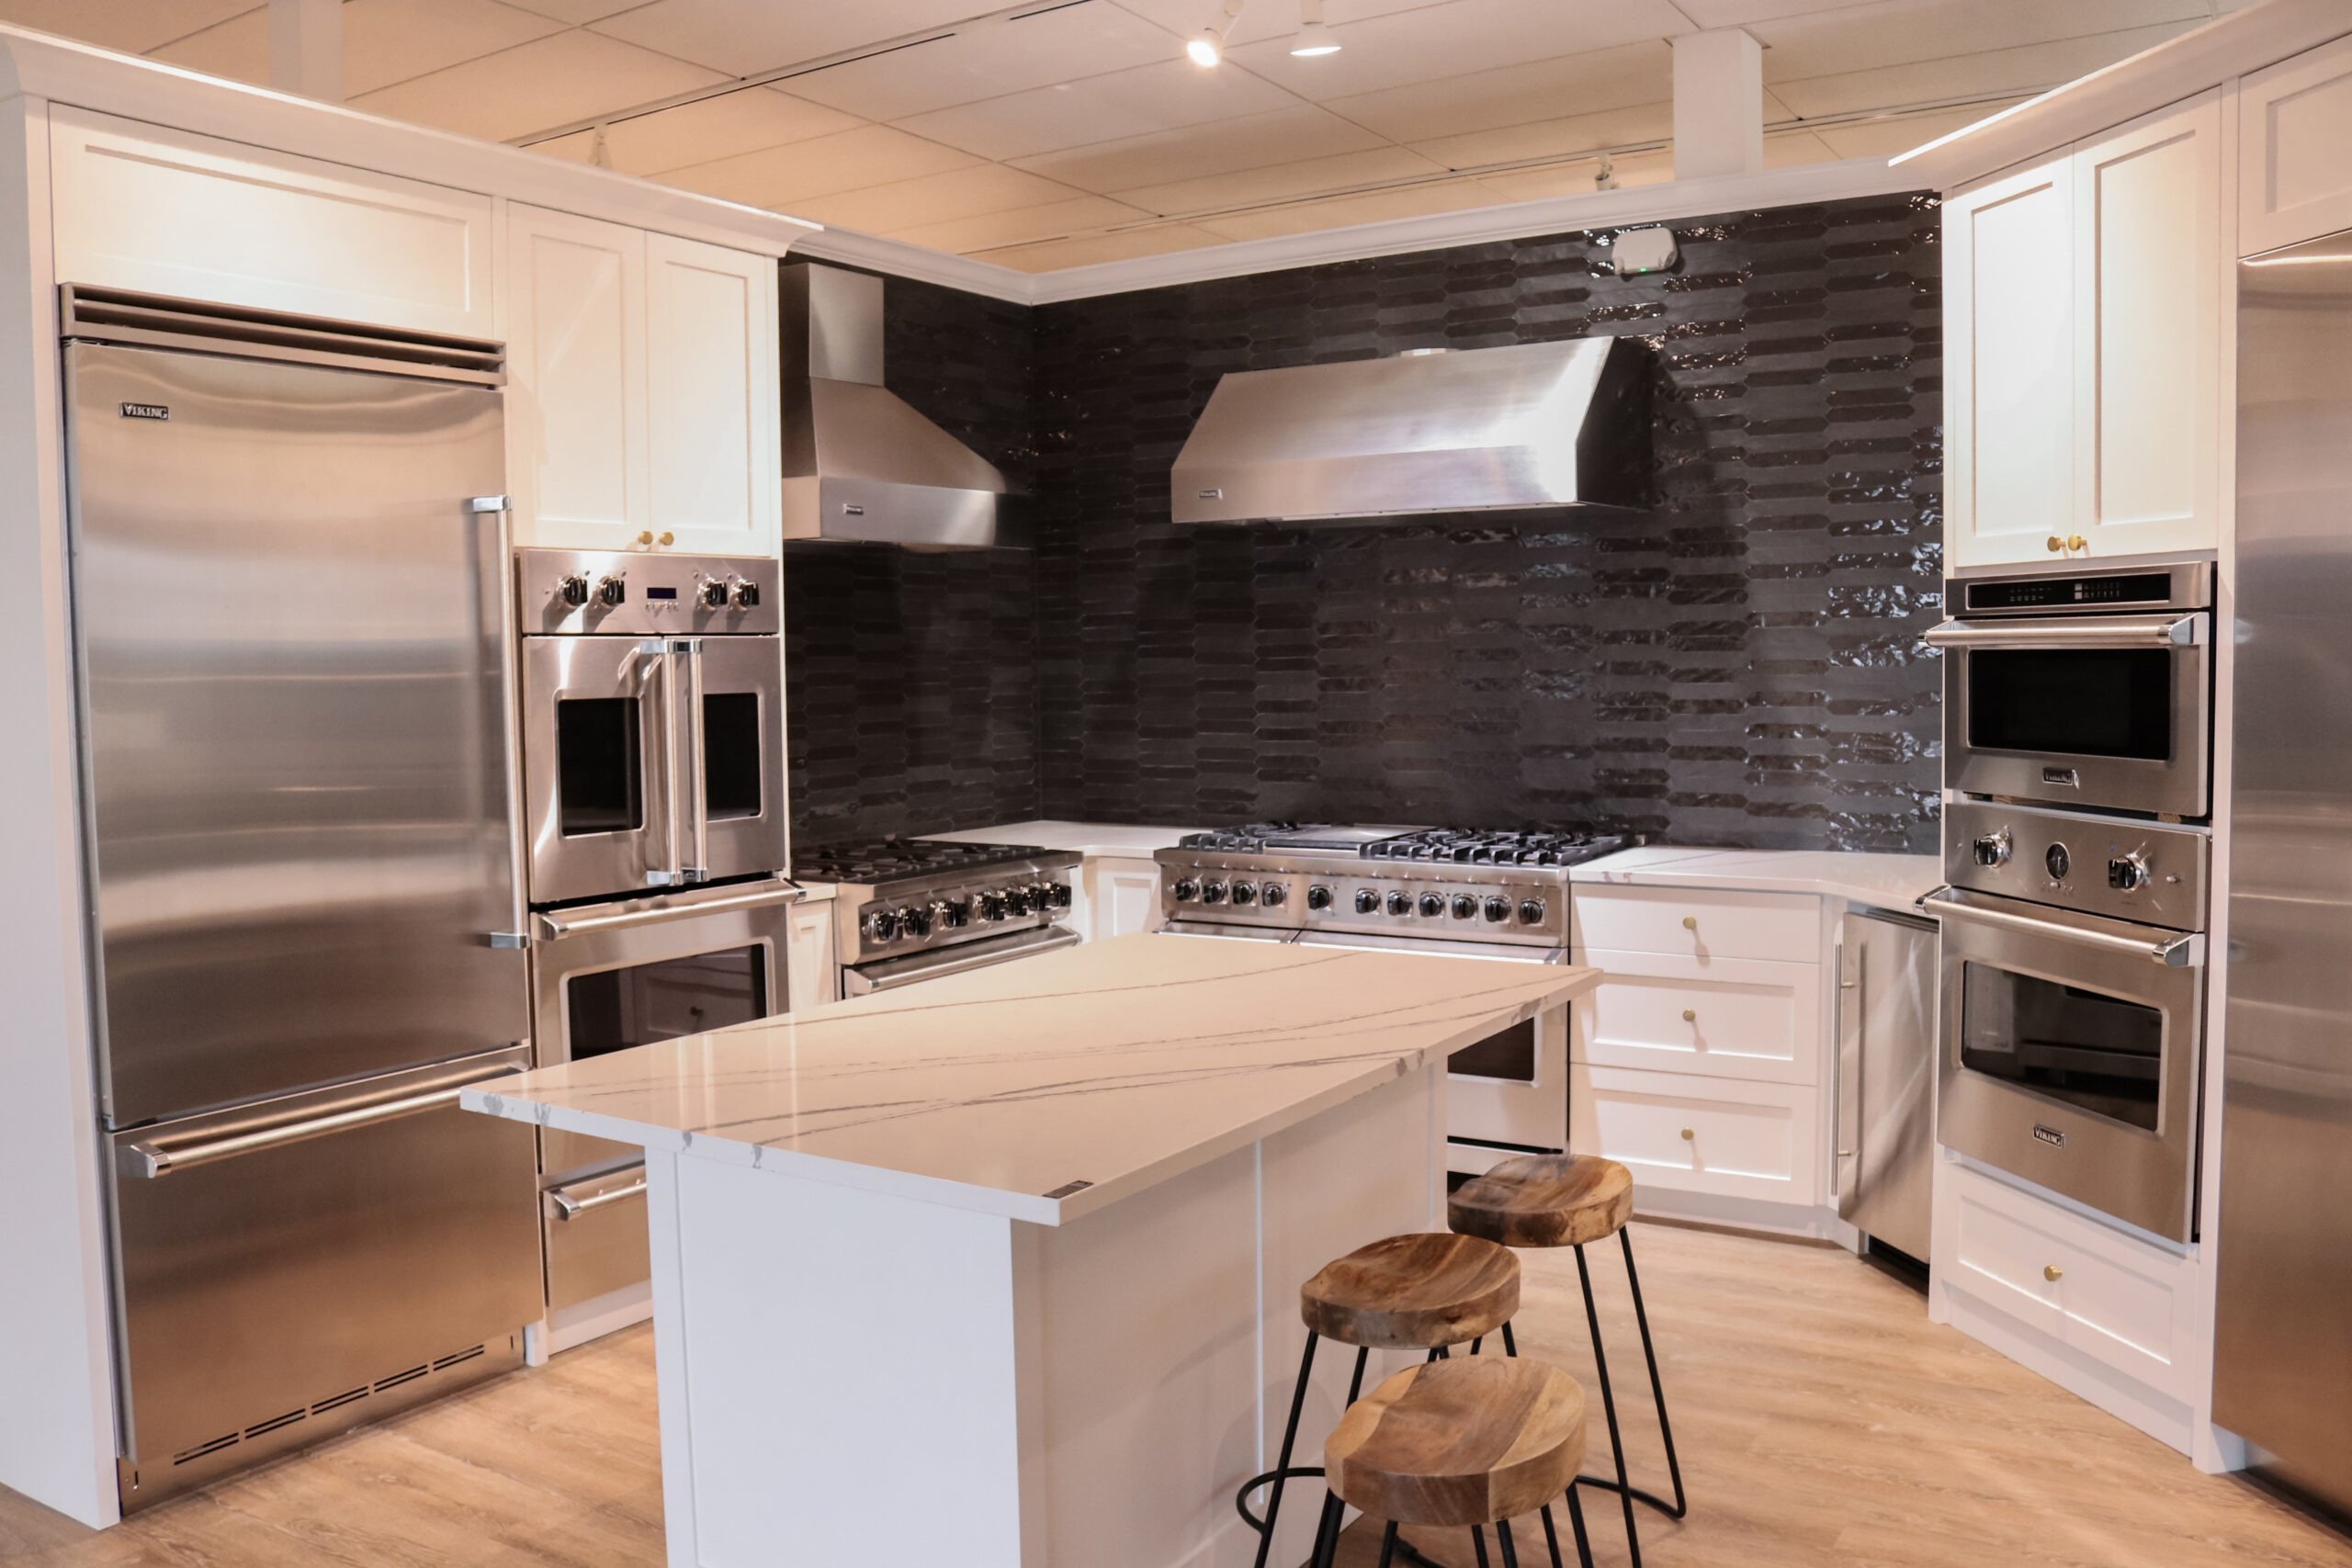 Basco kitchen showroom with quartz countertops and black backsplash